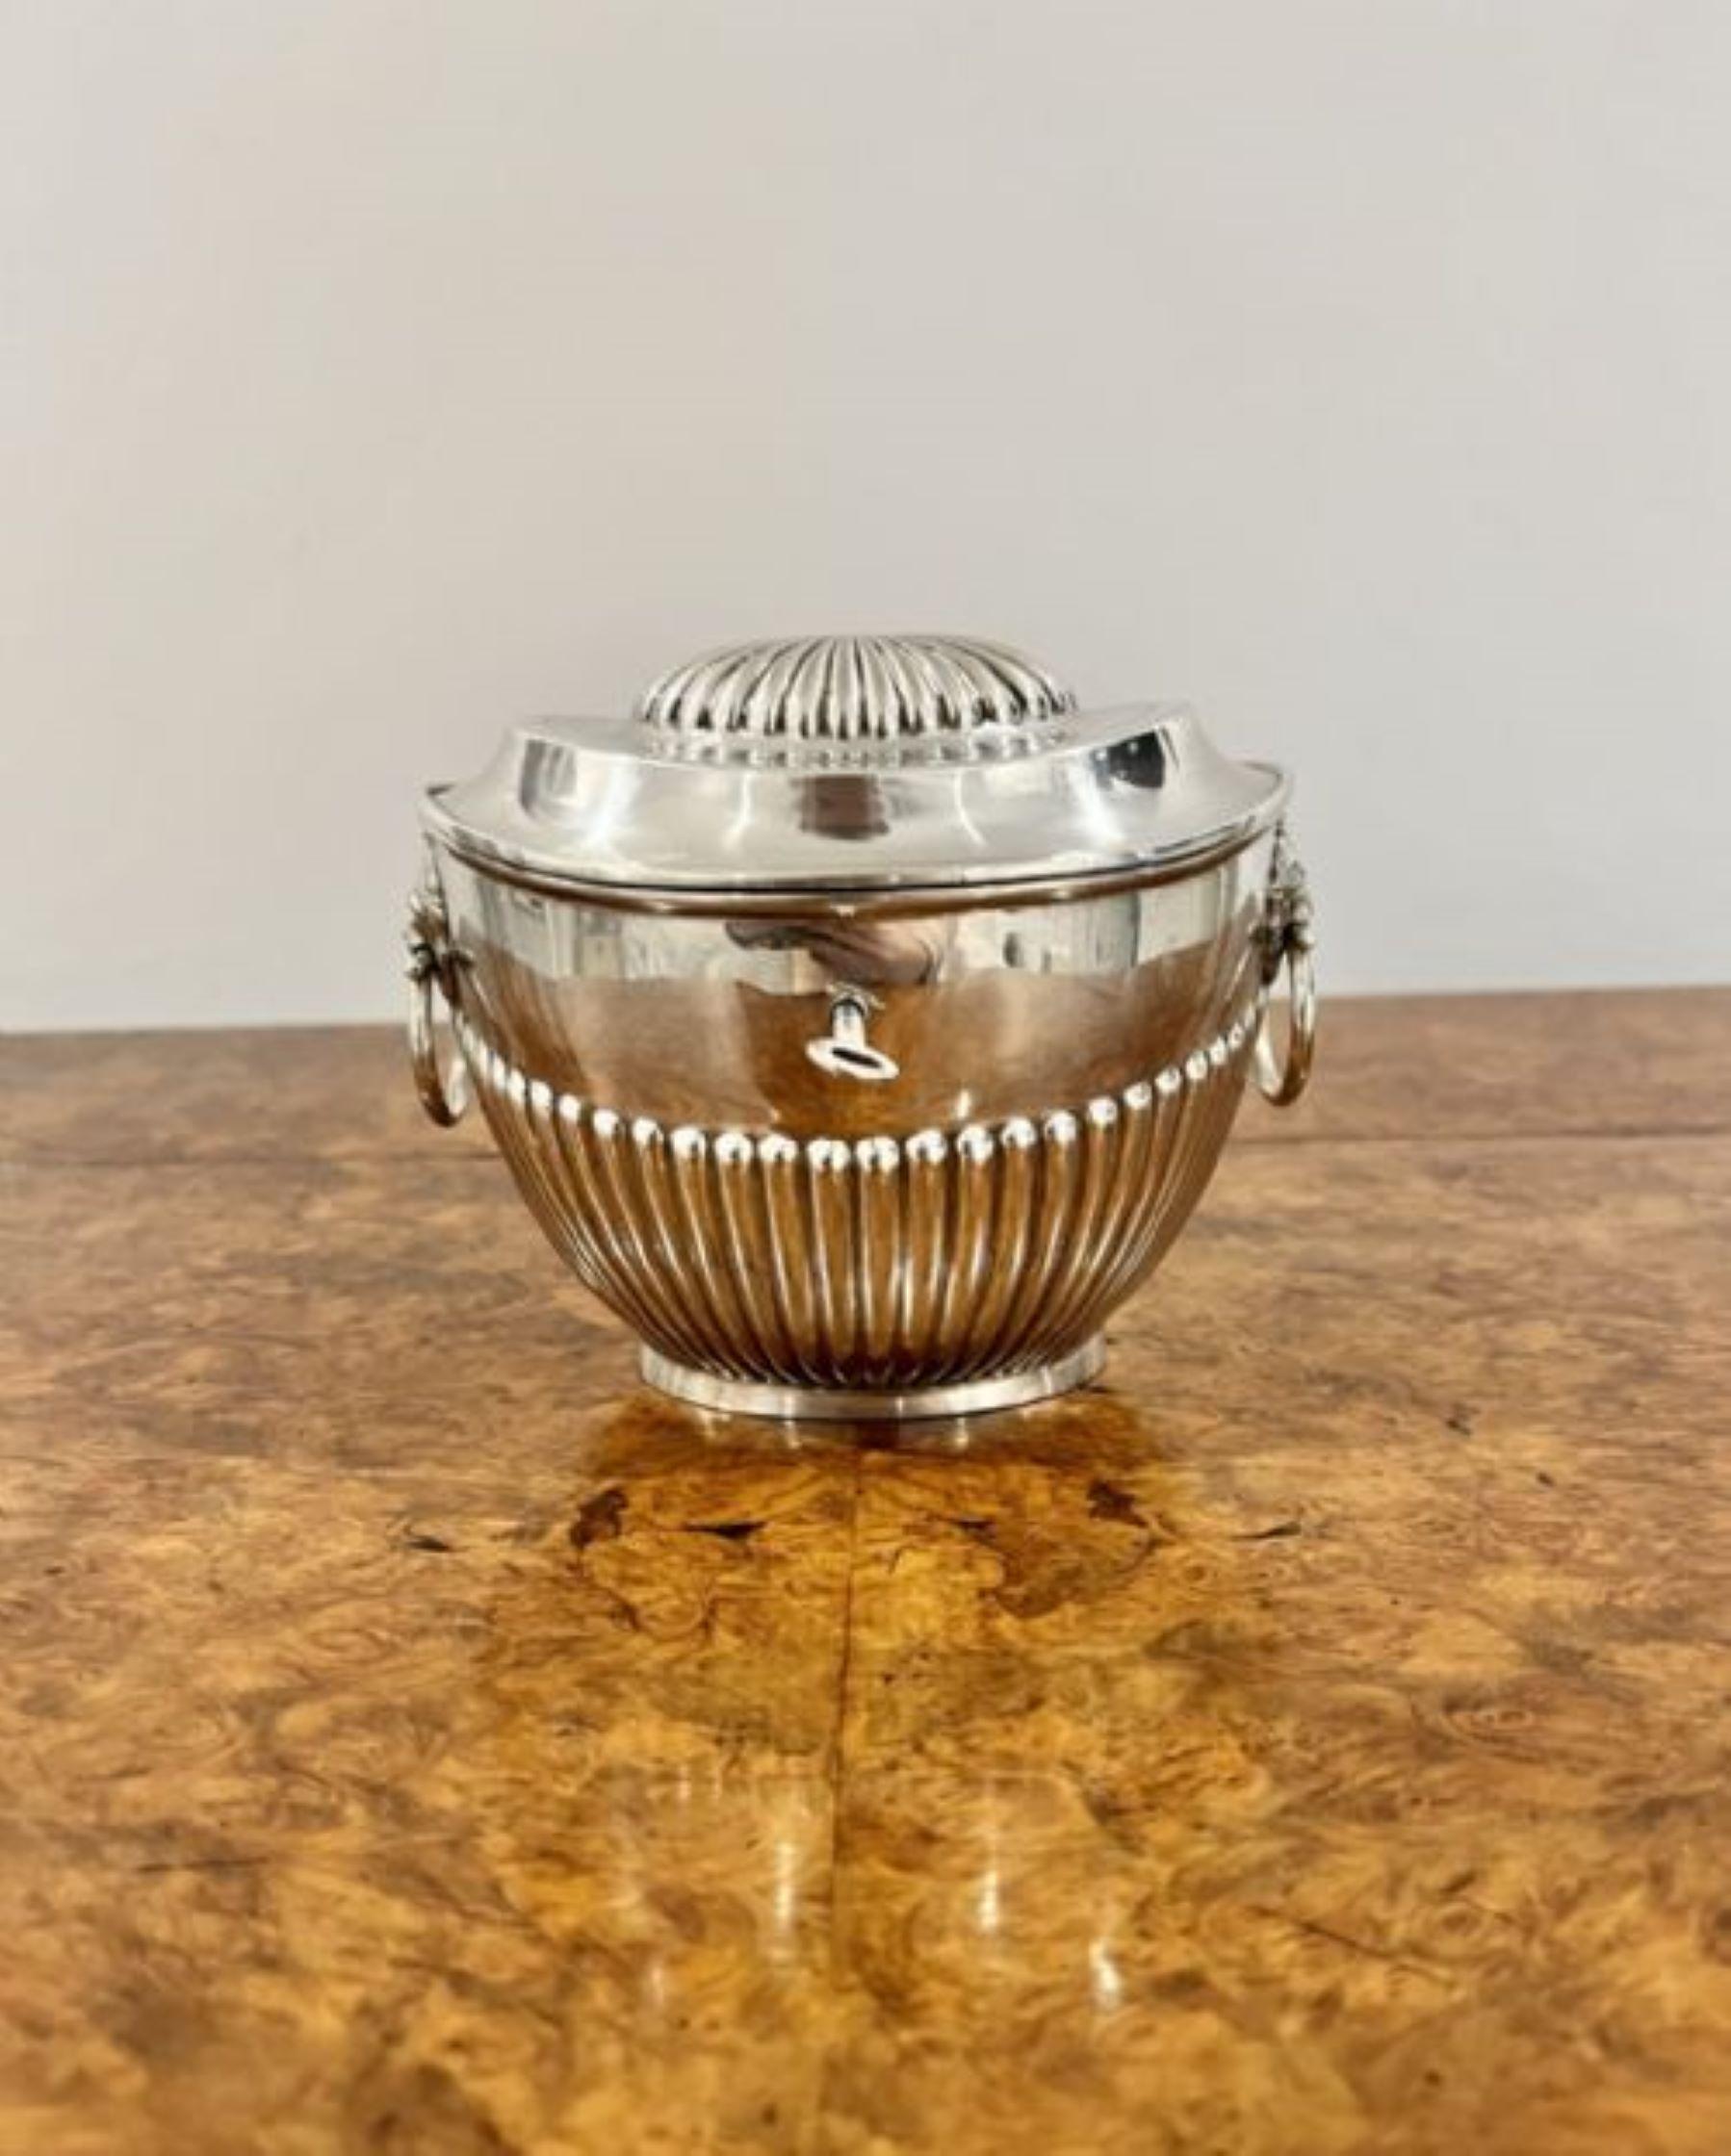 Ancienne boîte à thé victorienne en métal argenté avec couvercle cannelé de qualité, poignées en anneau à tête de lion sur les deux côtés, décoration cannelée autour du corps avec clé d'origine et serrure en état de marche. 